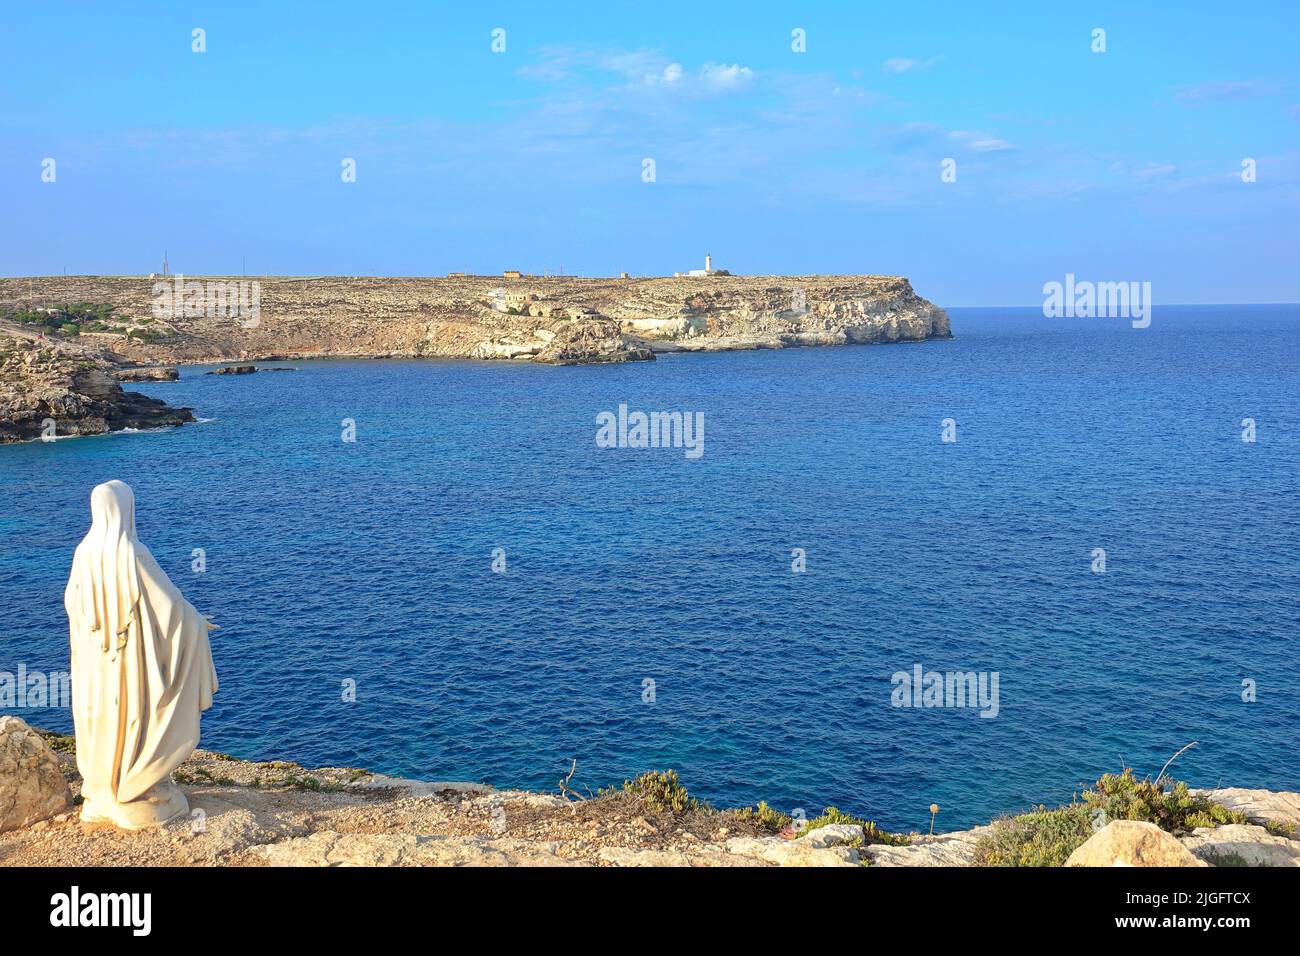 Vista de la costa de la isla de Lampedusa paraíso marino para yates y nadadores. Lampedusa, Italia - Agosto de 2019 Foto de stock